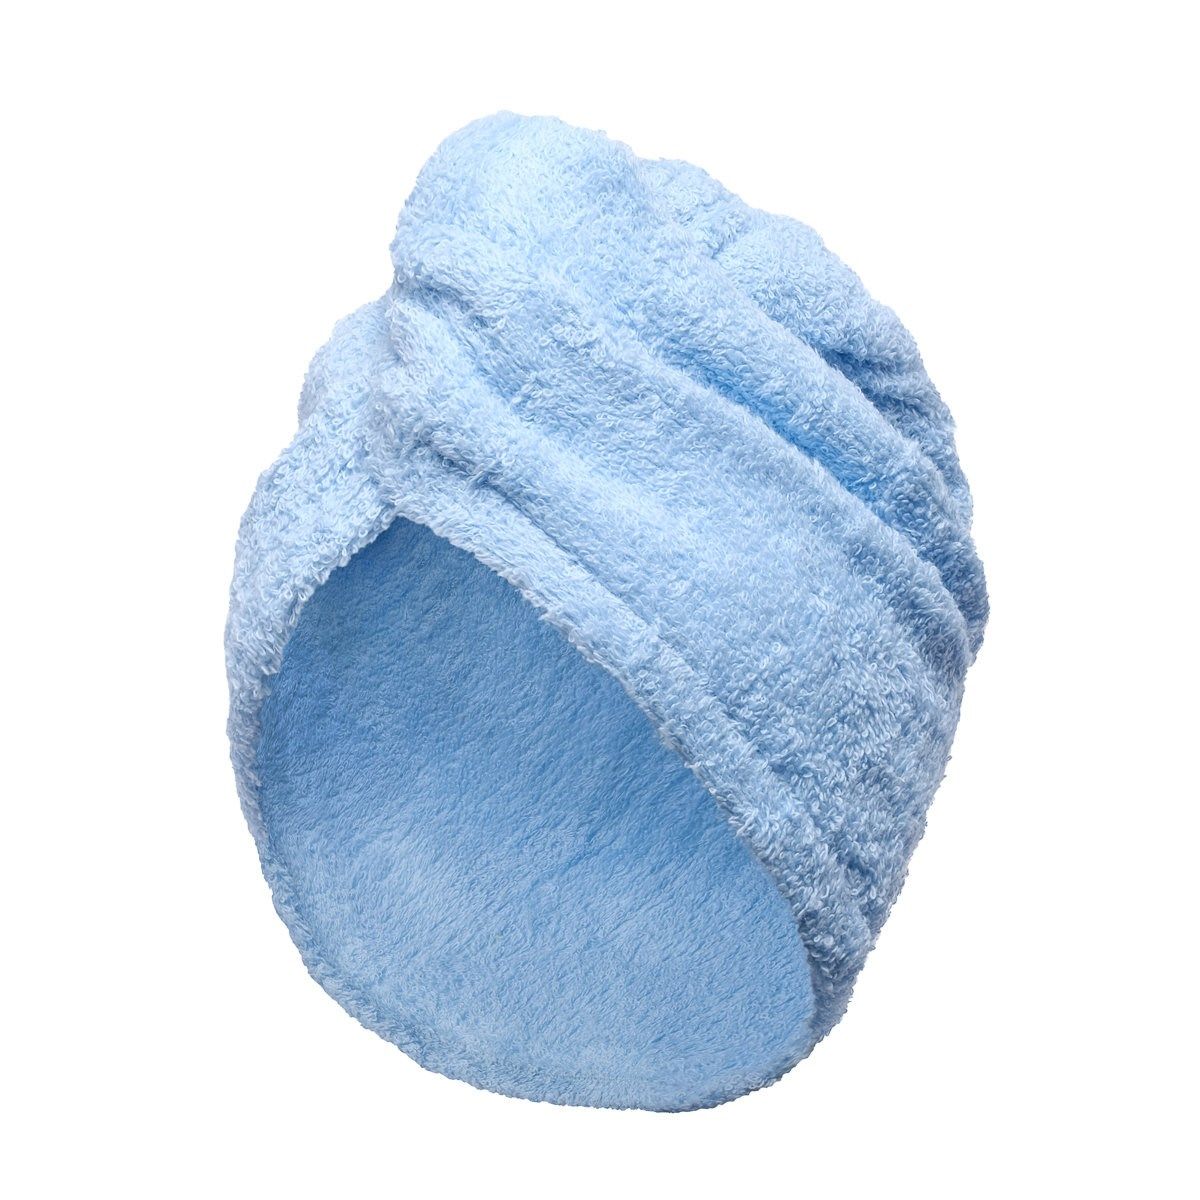 Bonnet de douche : lavable à 60°, taille unique